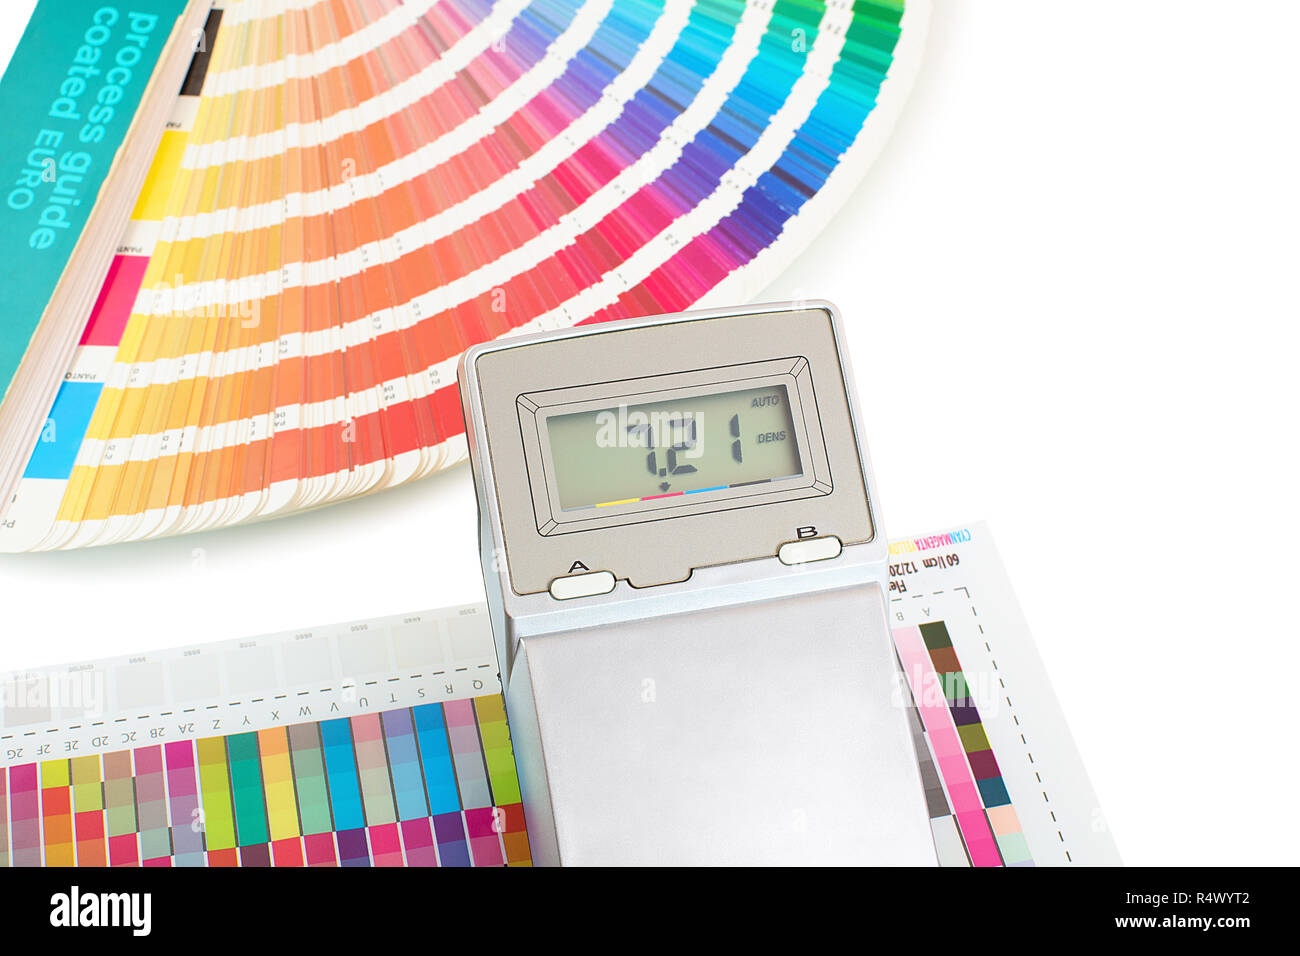 Colore stampato swatch con misuratore di densità e guida di vernice isolati  su sfondo bianco. La